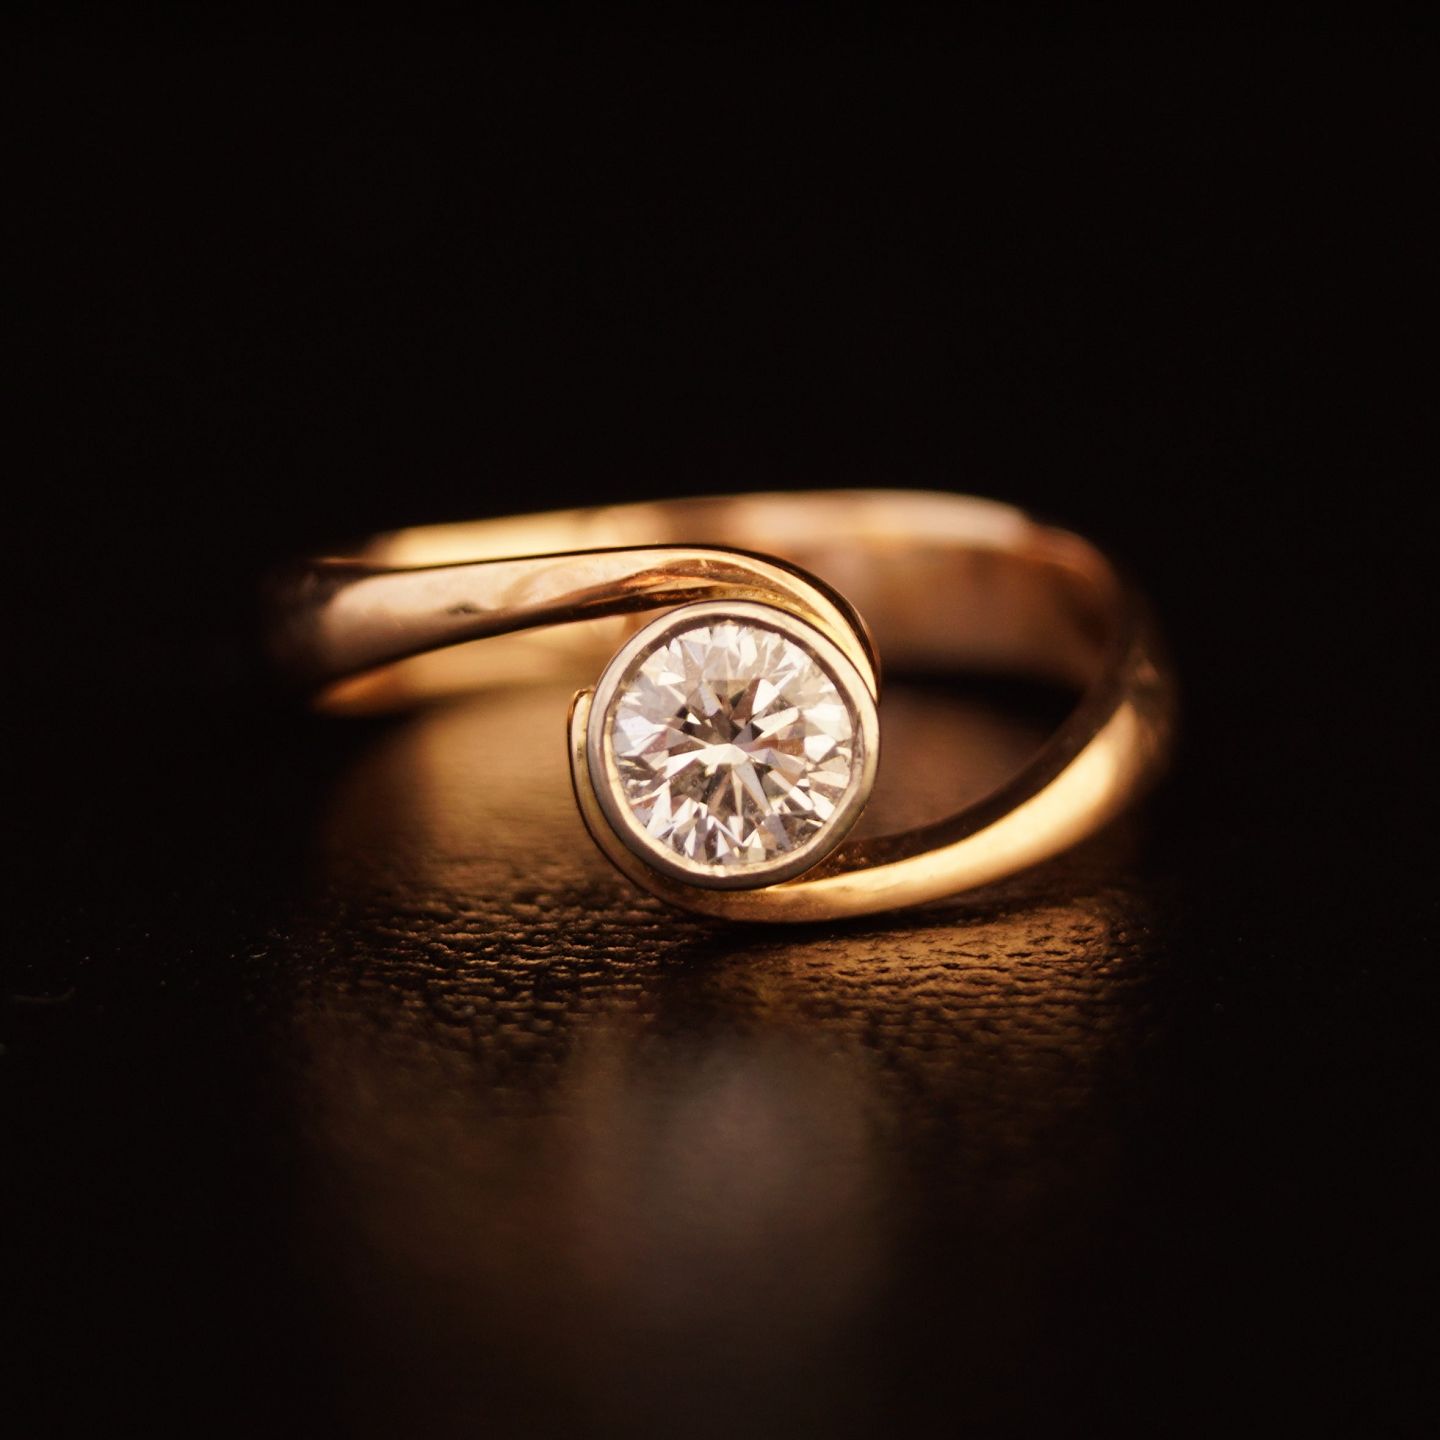 Banke Regelmæssigt Ekspedient www.Antikvitet.net - Diamant ring af 14 karat guld, 0.45 ct. År ca. 1920